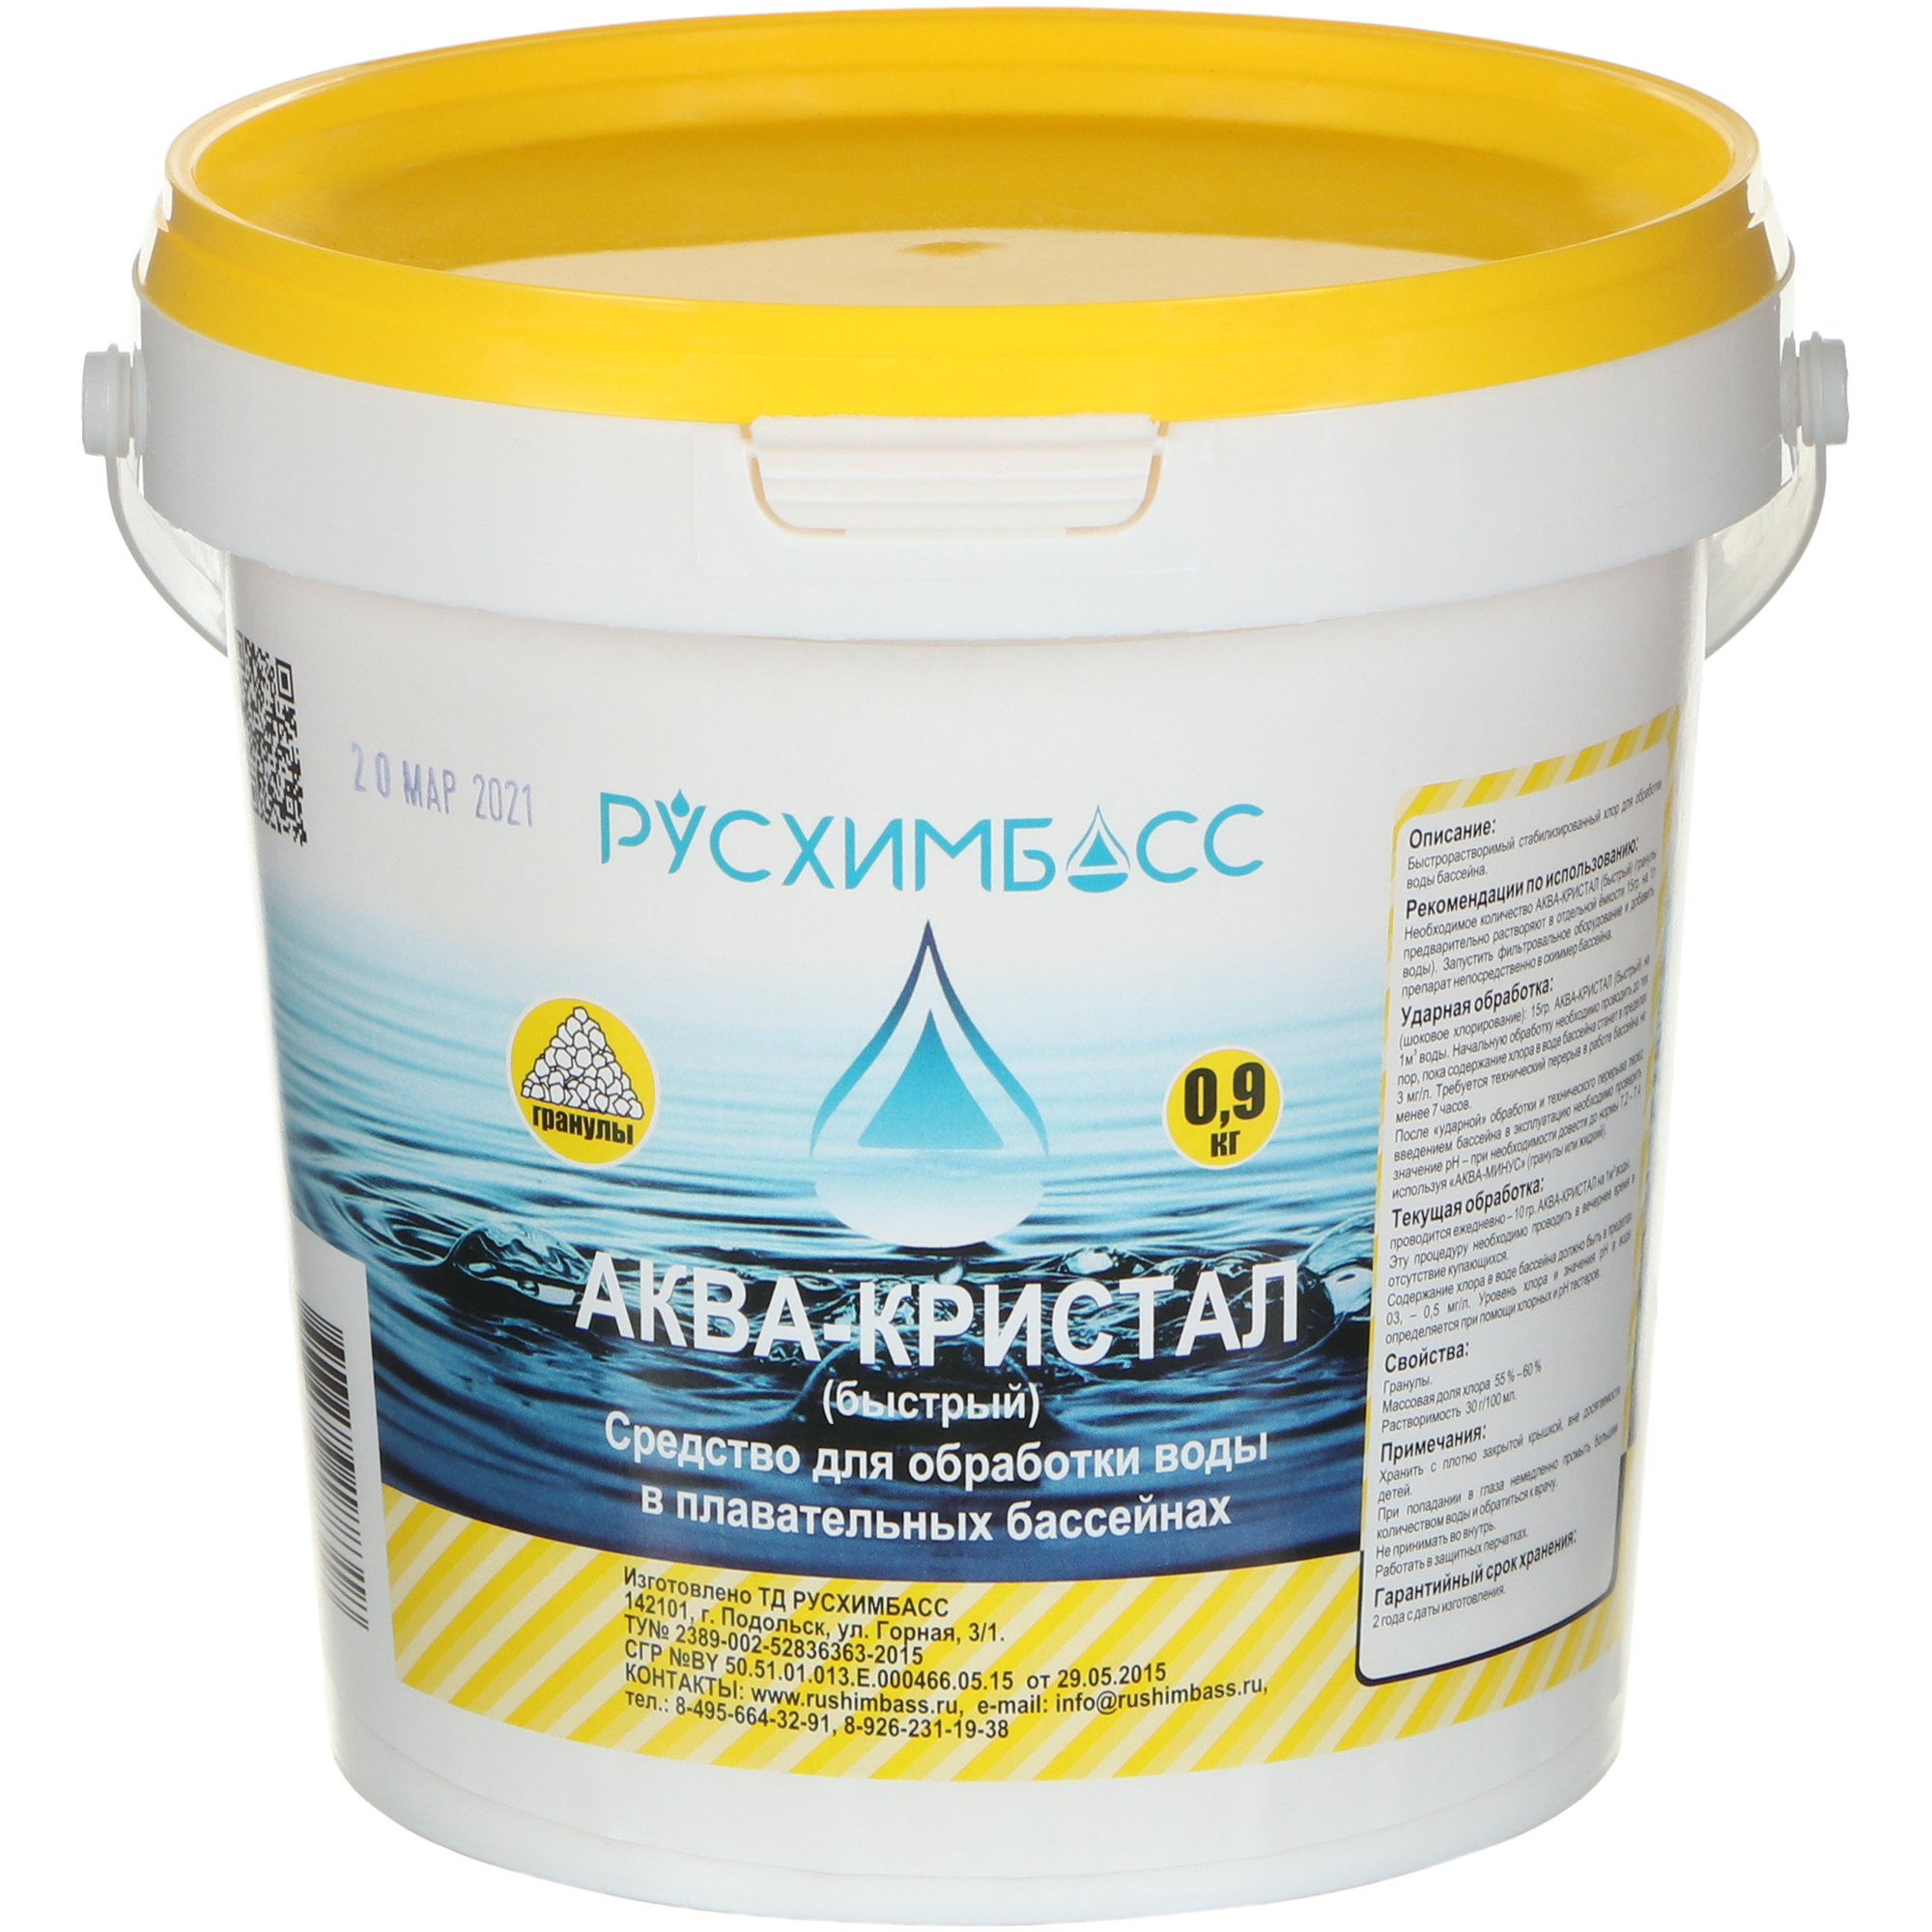 Средство для обработки воды в плавательных бассейнах Русхимбасс Аква-кристал(быстрый), гранулы, 0,9 кг